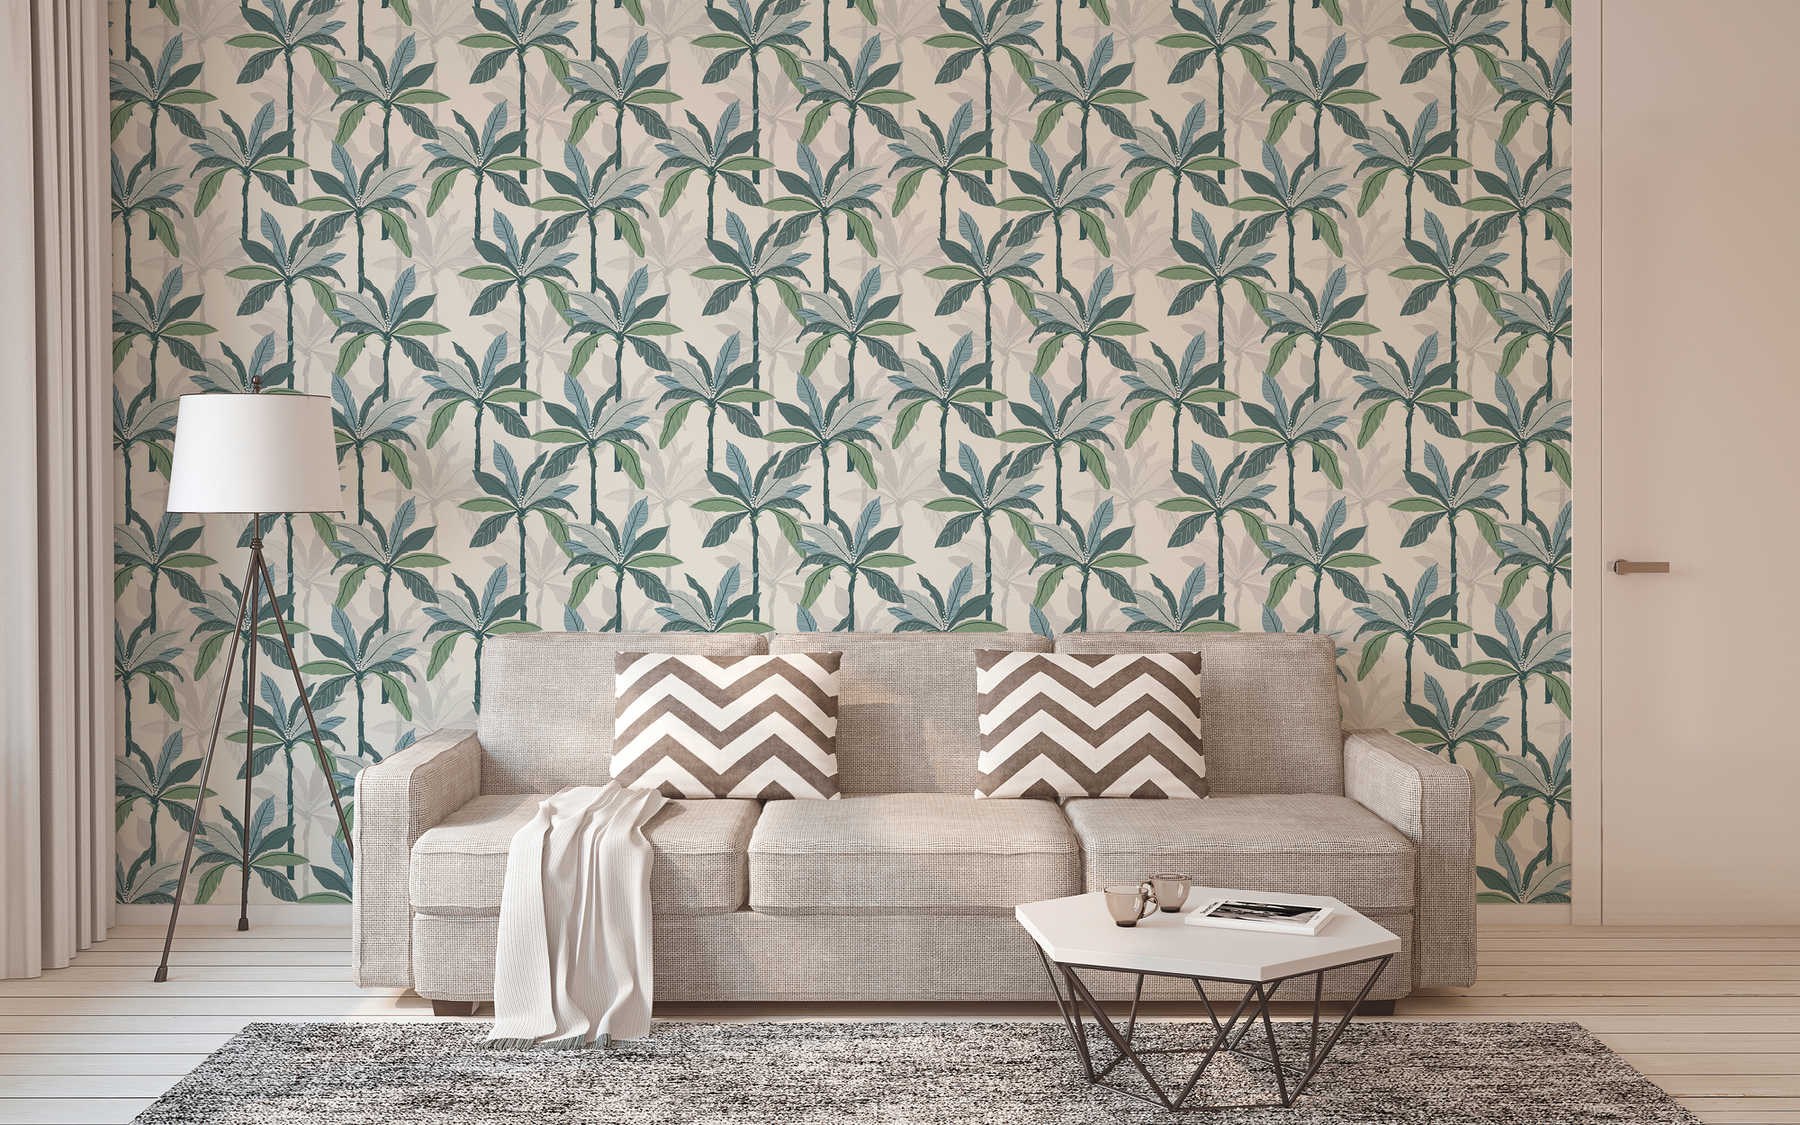             Papier peint tropical avec design de palmiers - bleu, vert, blanc
        